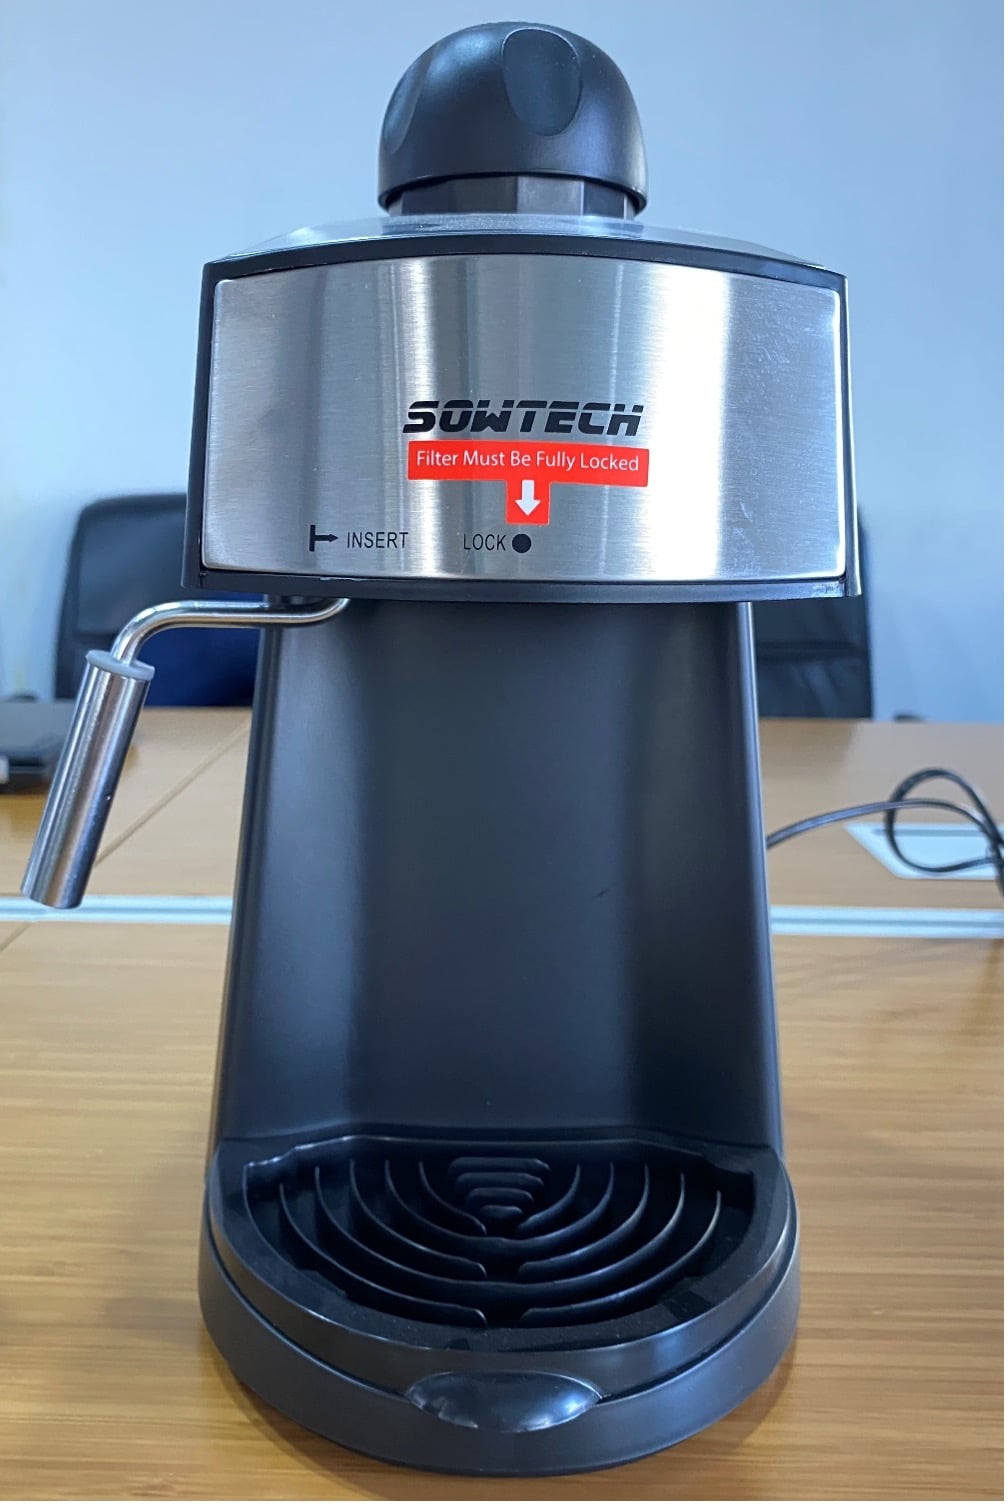 SOWTECH Espresso Machines Recalled for Burn Hazard